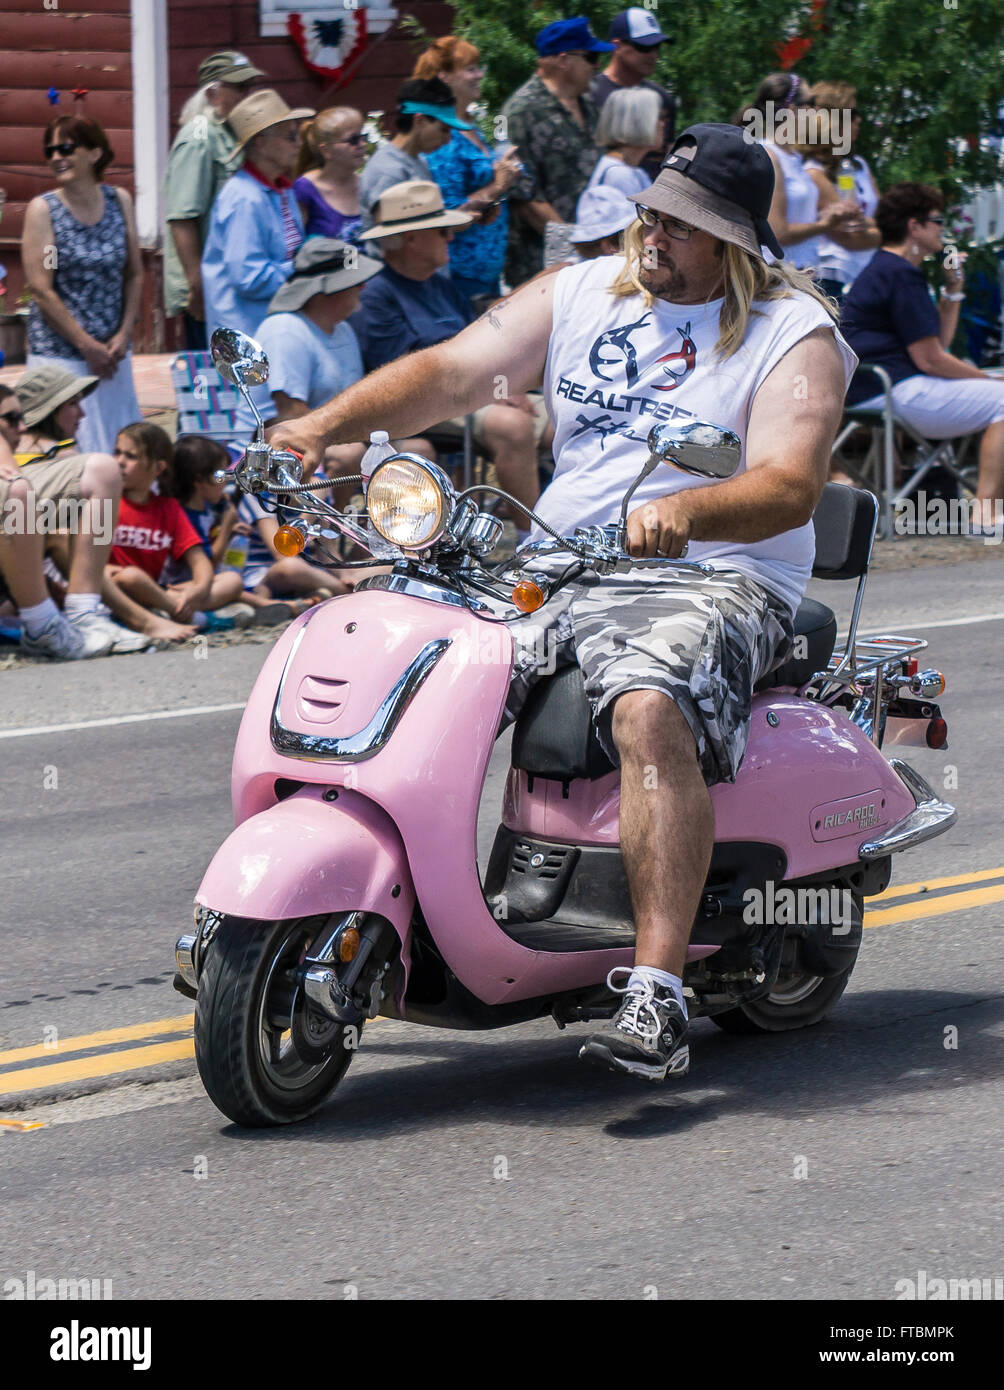 Graeagle, Californie, USA- 5 juillet 2015 : Un homme conduit une moto rose dans n la vallée Mohawk Independence Day Celebration. Banque D'Images